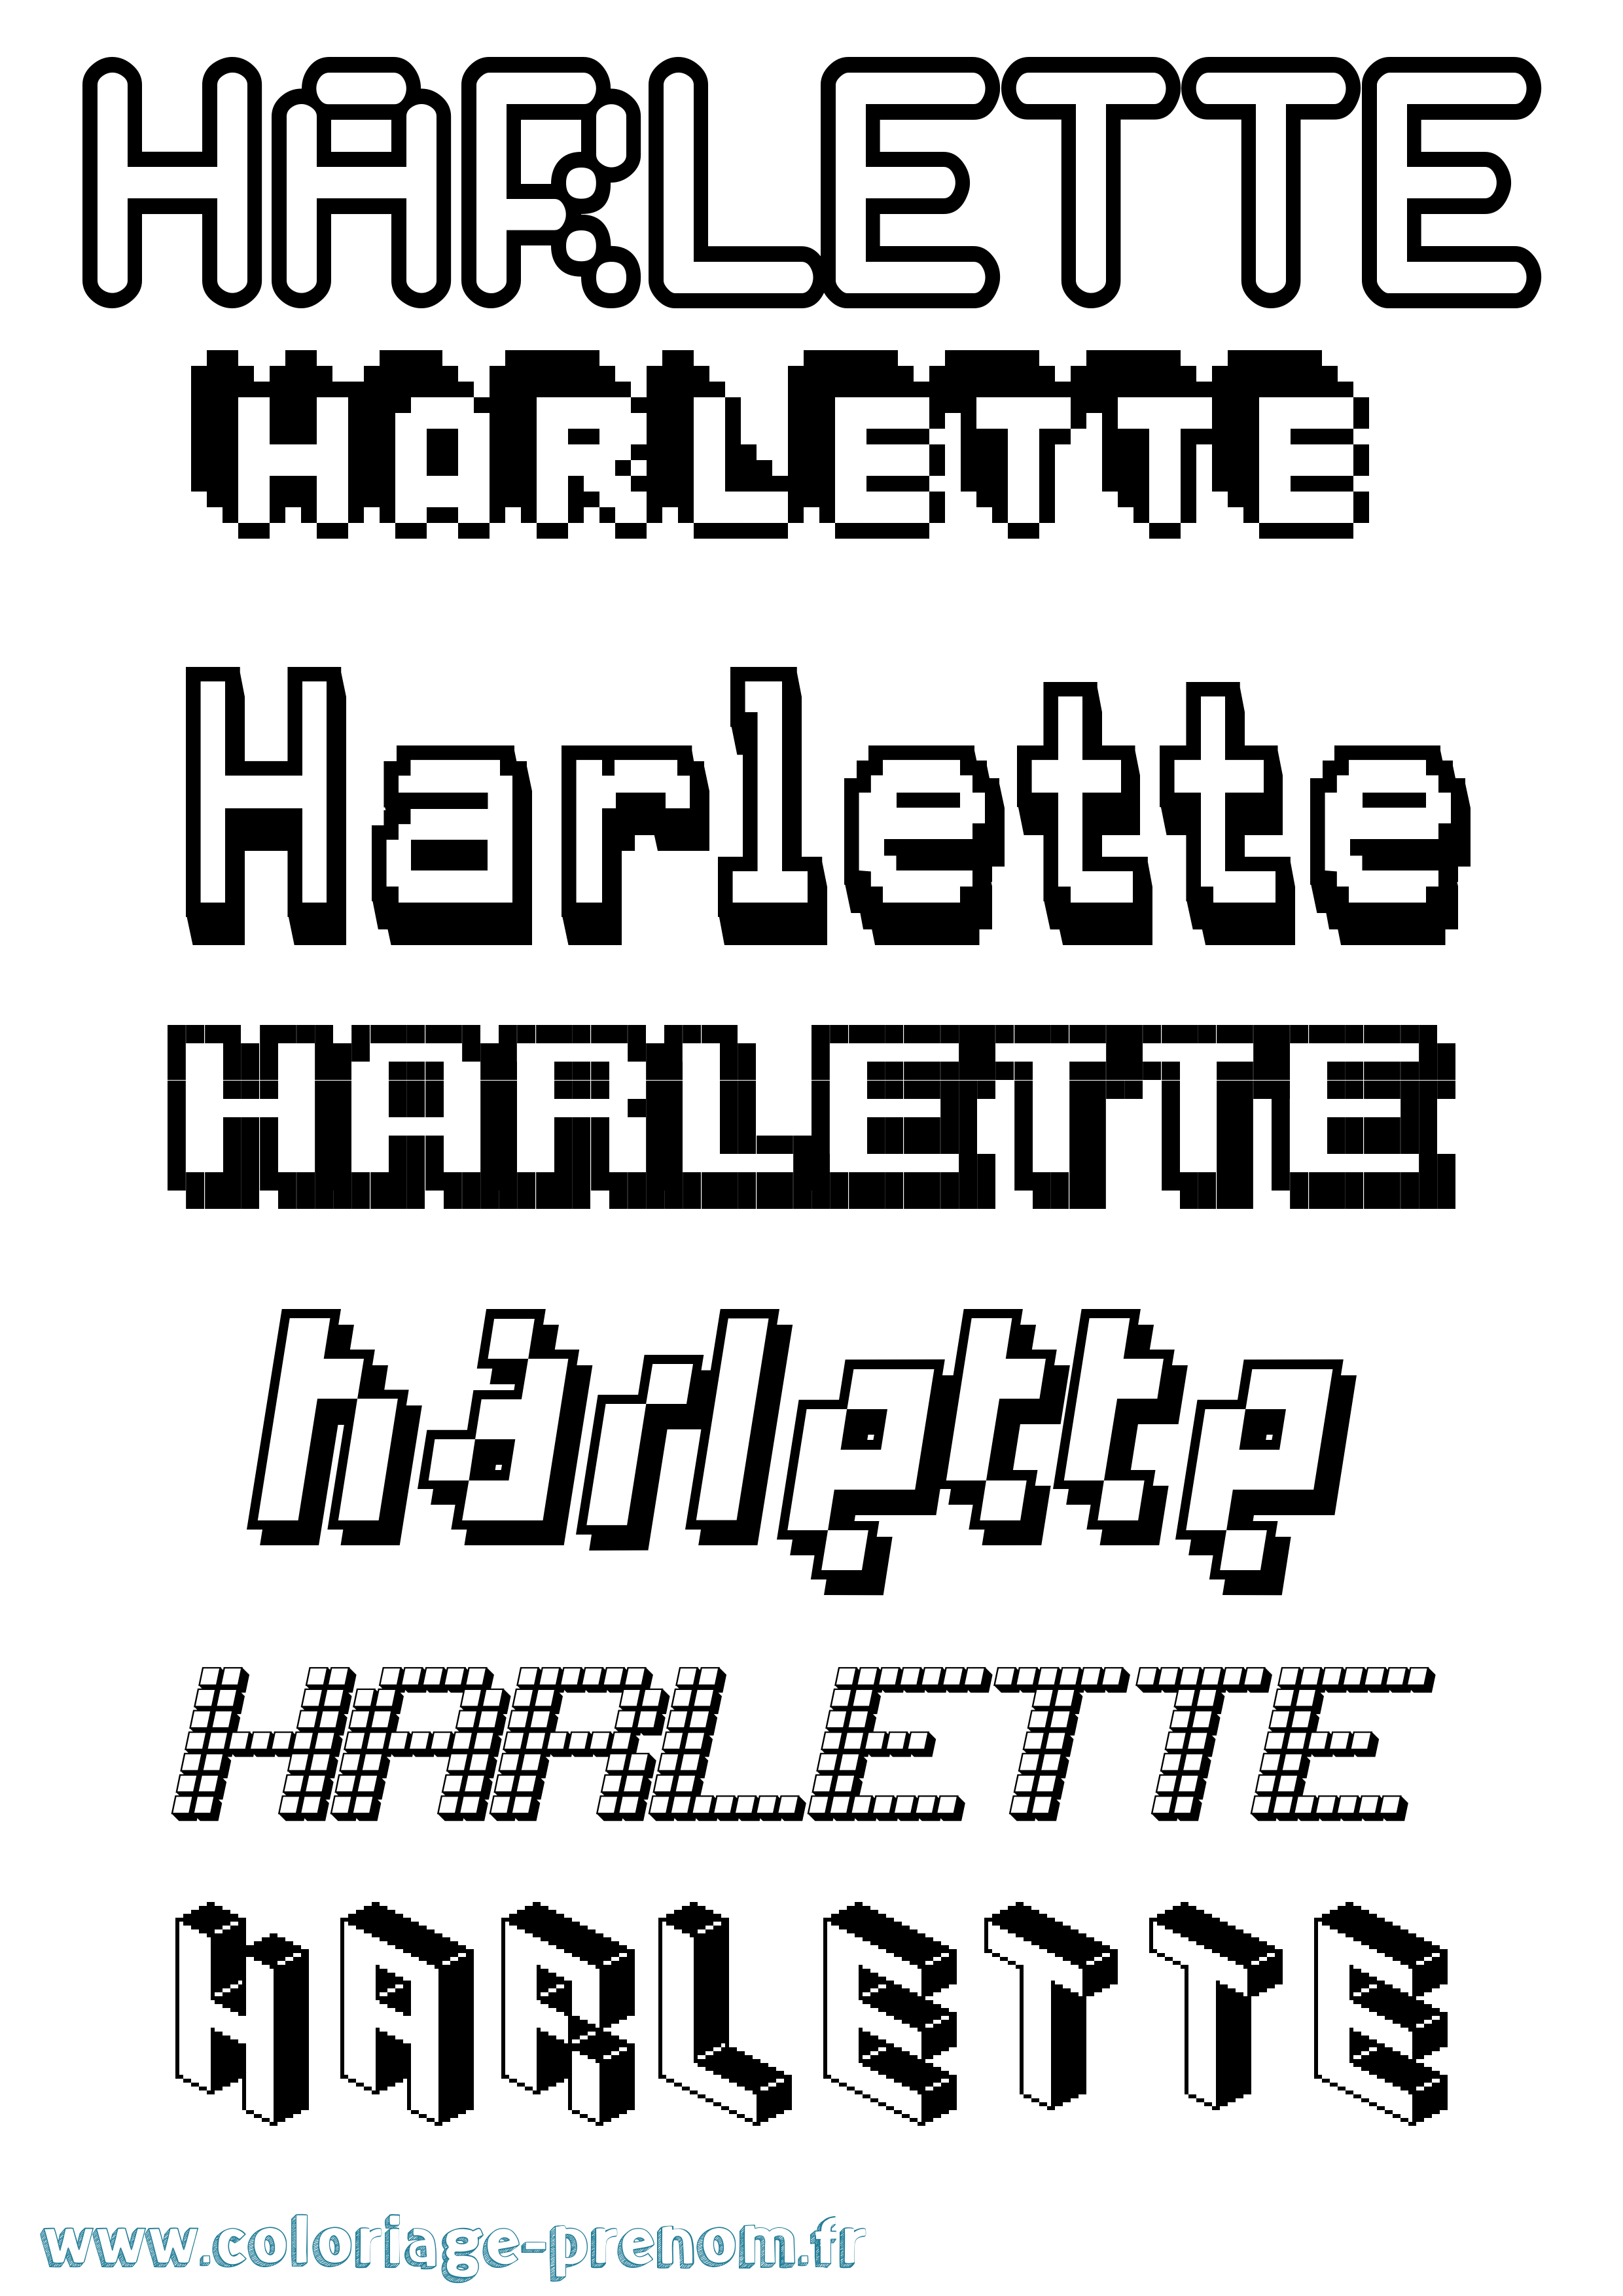 Coloriage prénom Harlette Pixel